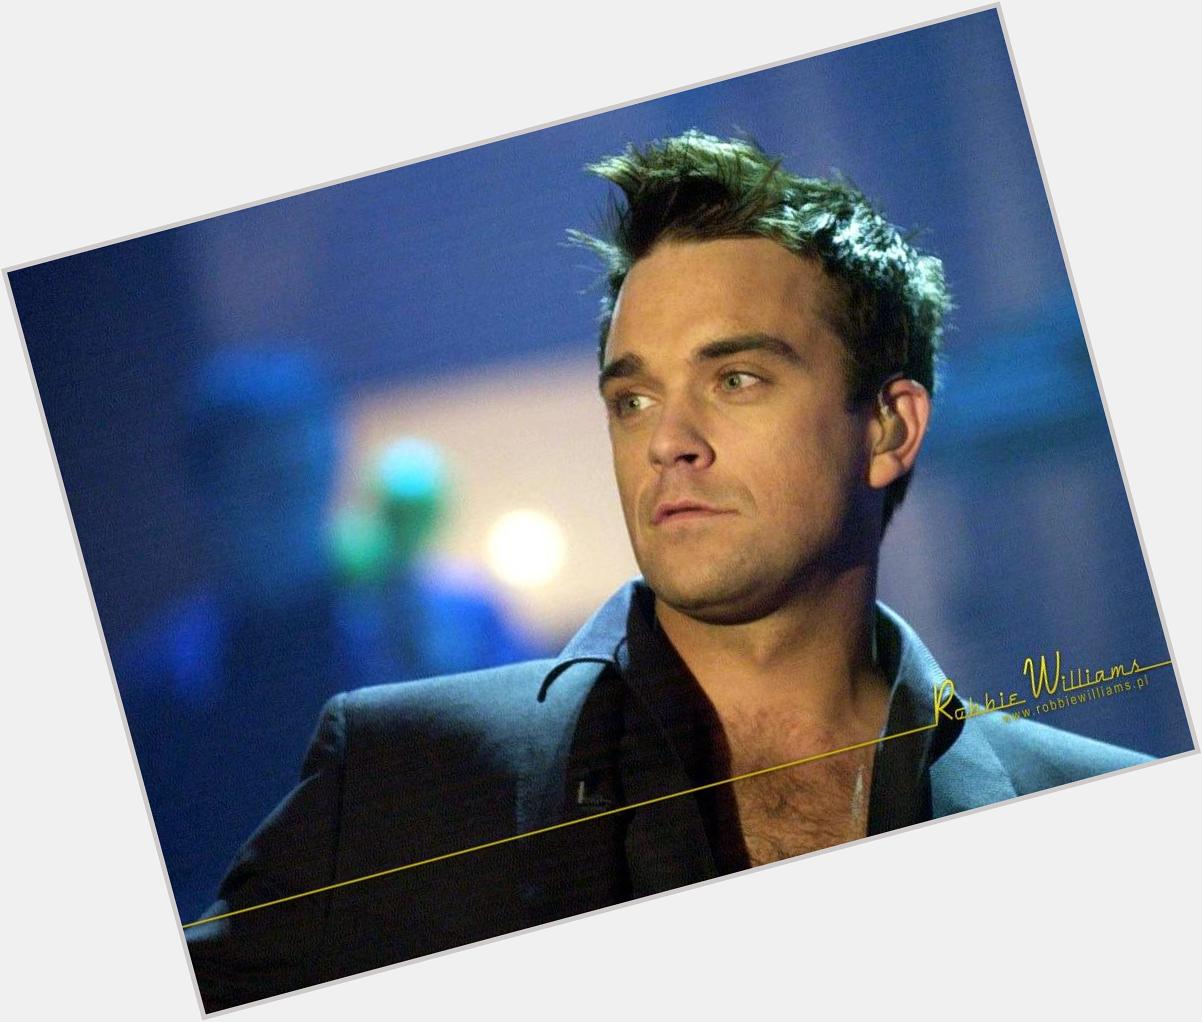 Happy birthday Robbie Williams <3 